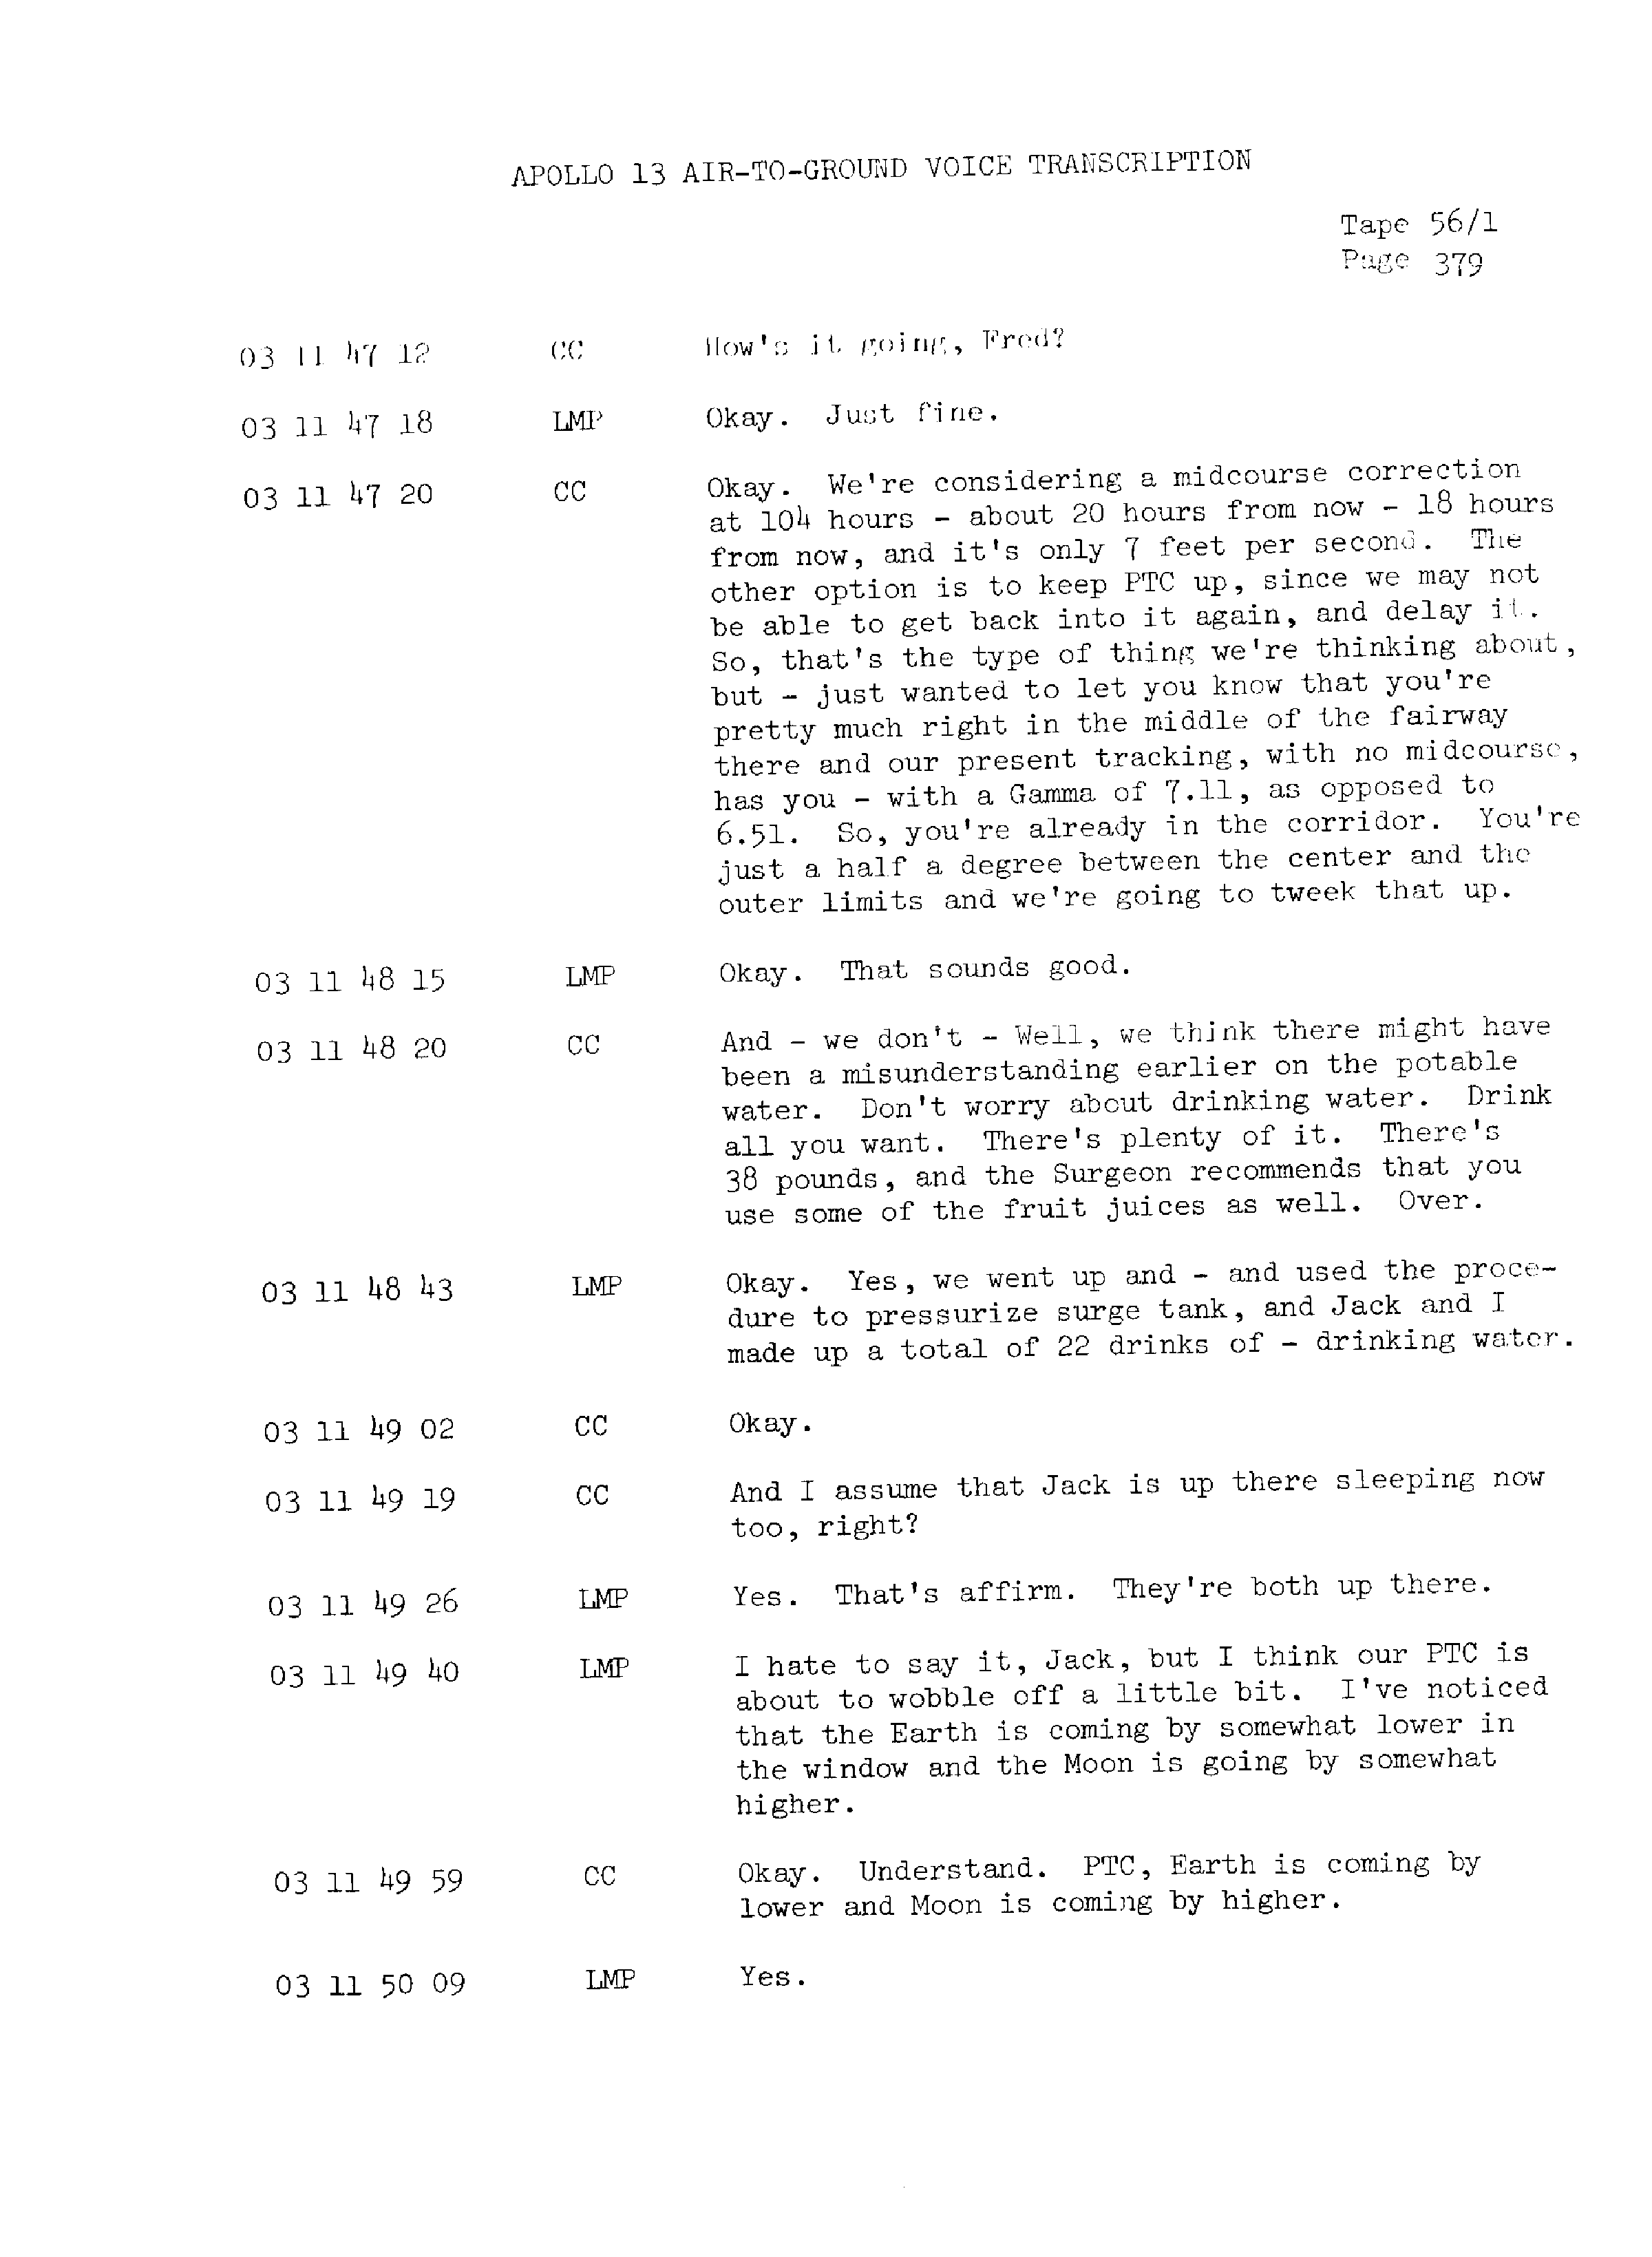 Page 386 of Apollo 13’s original transcript